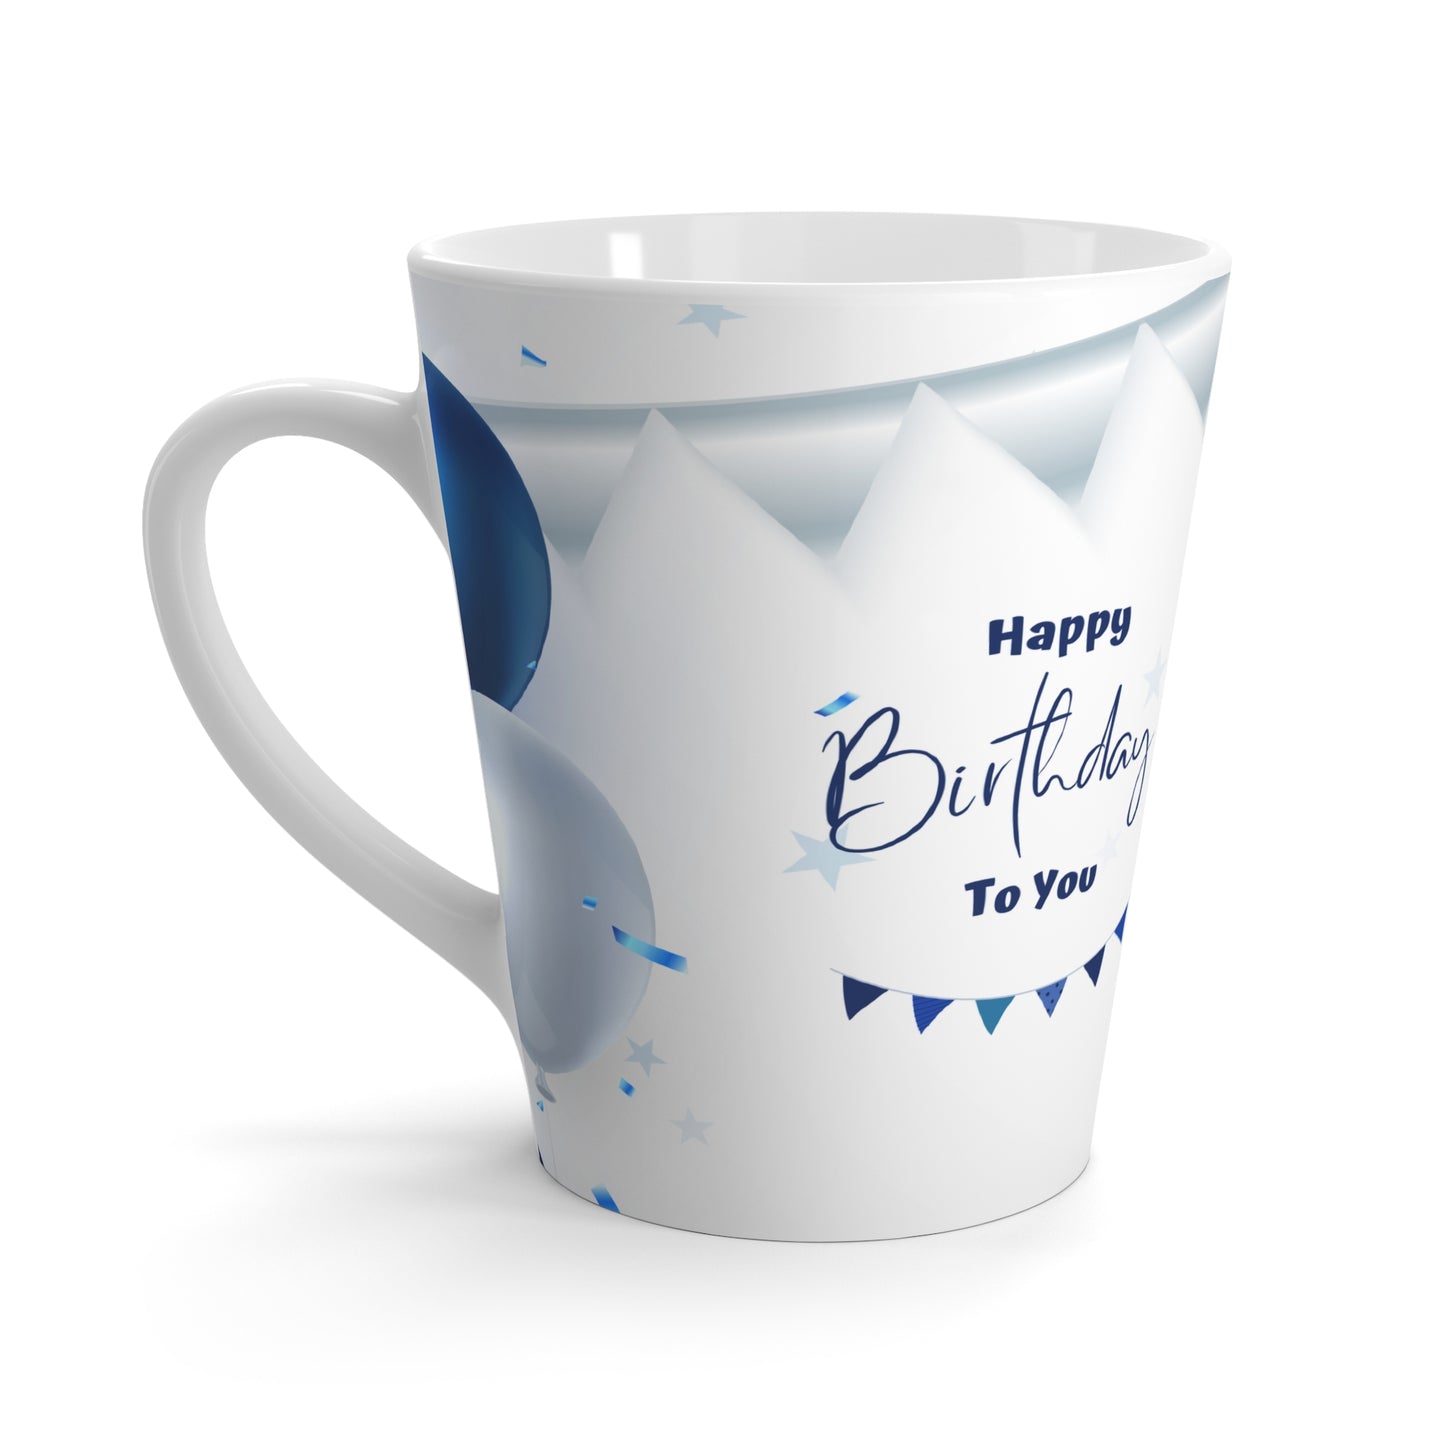 Happy Birthday to You Latte Mug, 12oz